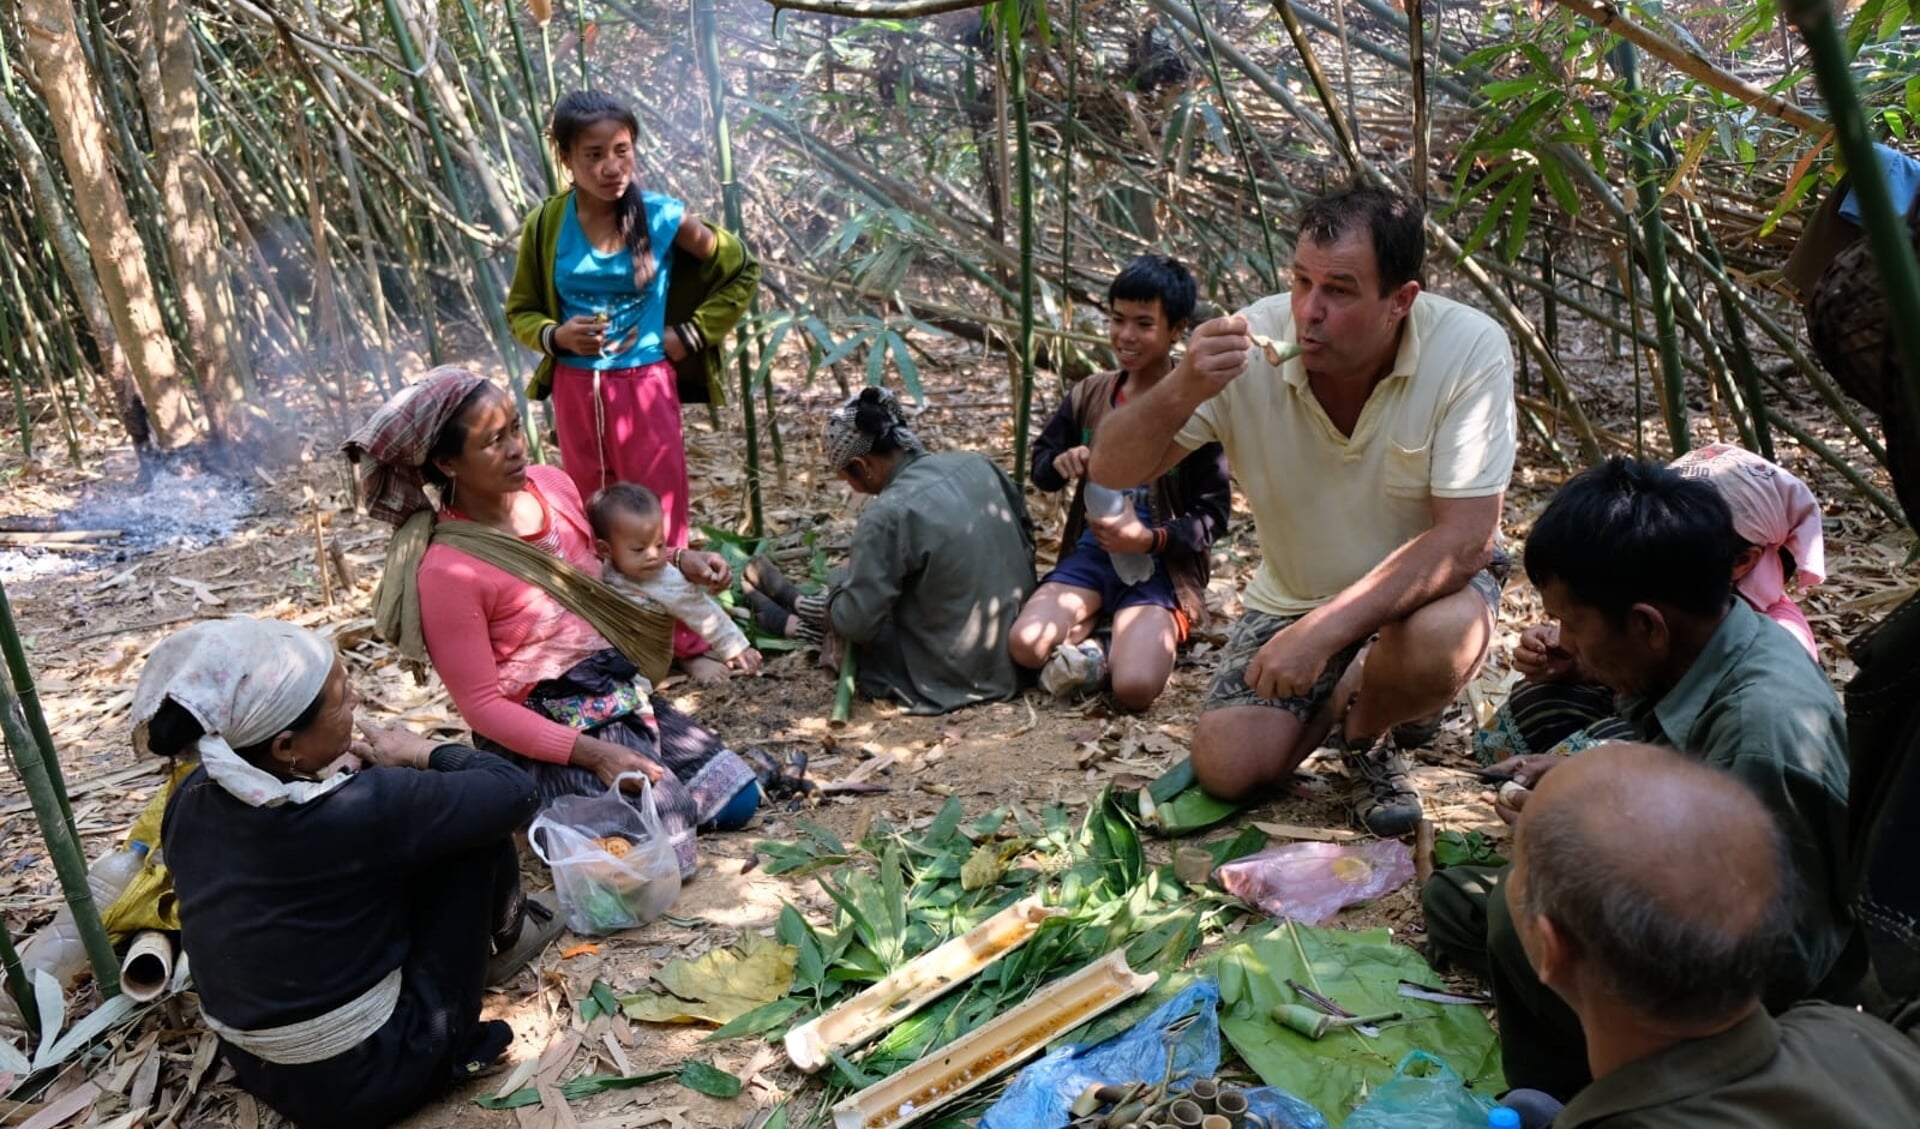 Jan Dirk Zonnenberg probeert bamboescheuten van de barbecue, in Laos.